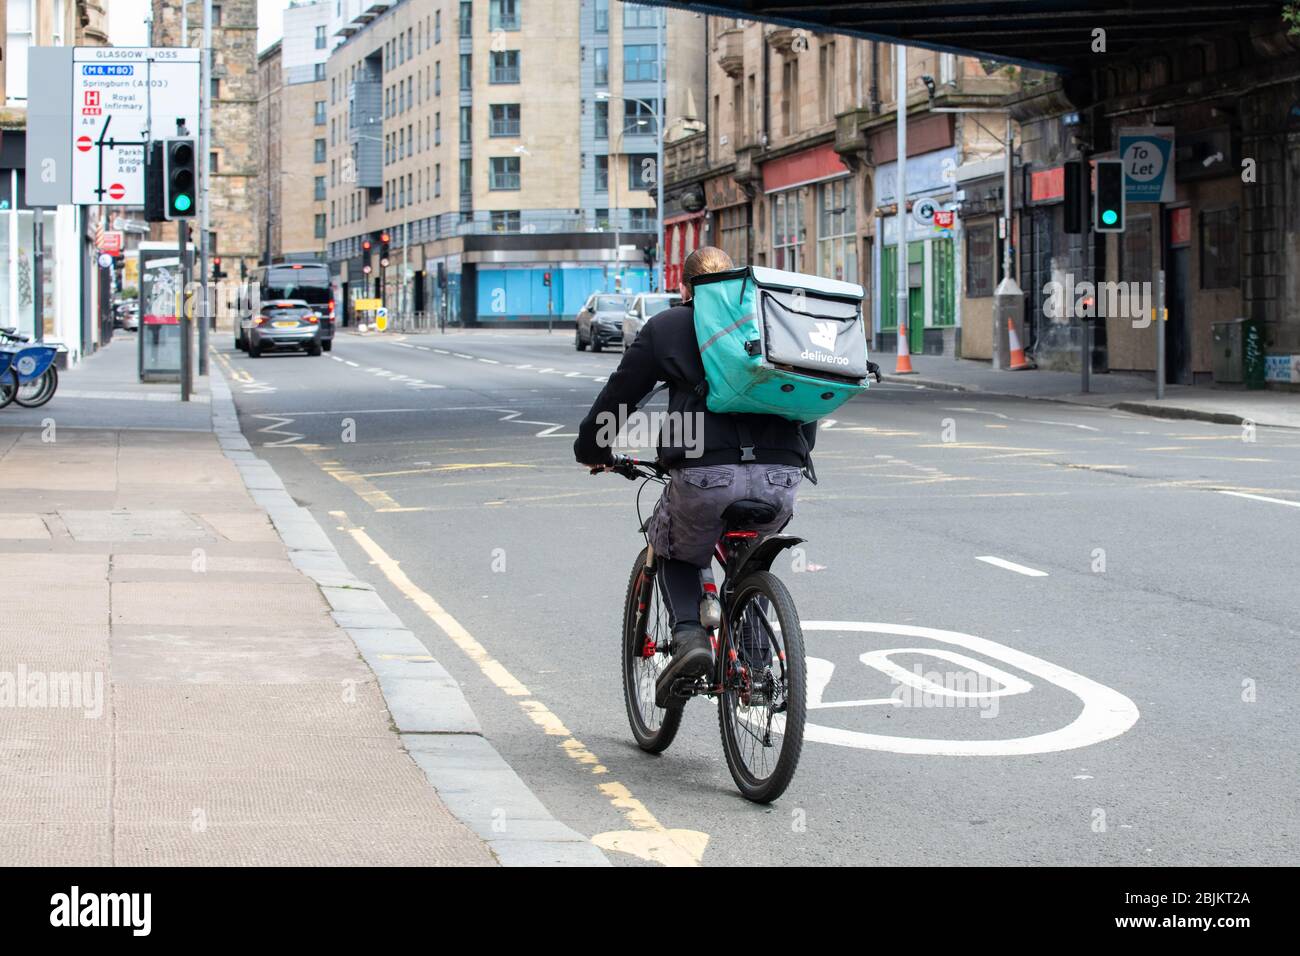 Le pilote Deliveroo se faisant du vélo dans les rues presque désertes de Glasgow pendant le verrouillage du coronavirus, Glasgow, Écosse, Royaume-Uni Banque D'Images